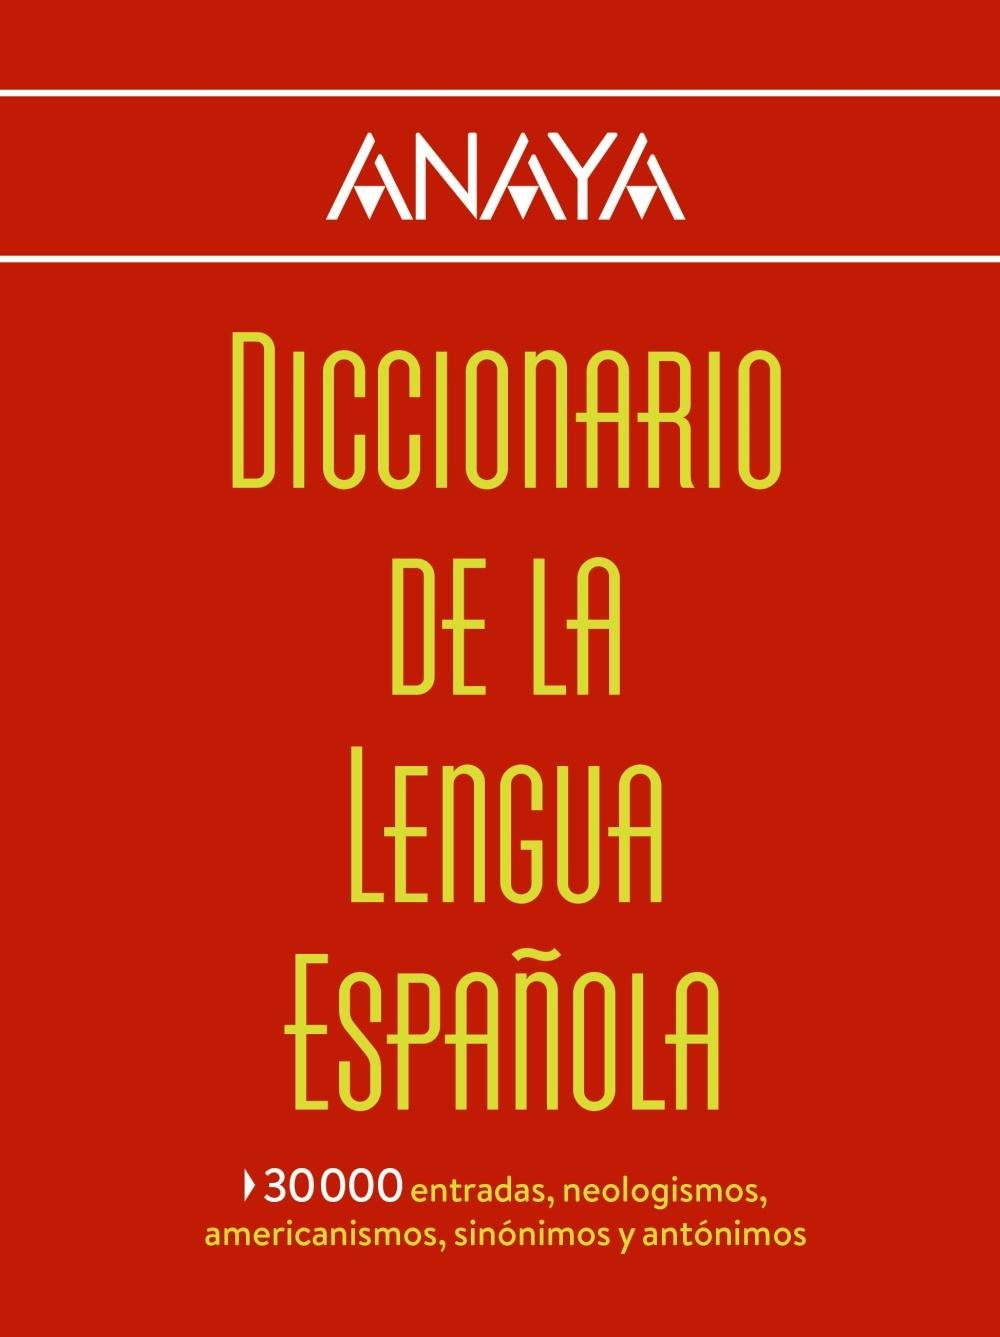 DICCIONARIO ANAYA DE LA LENGUA. 